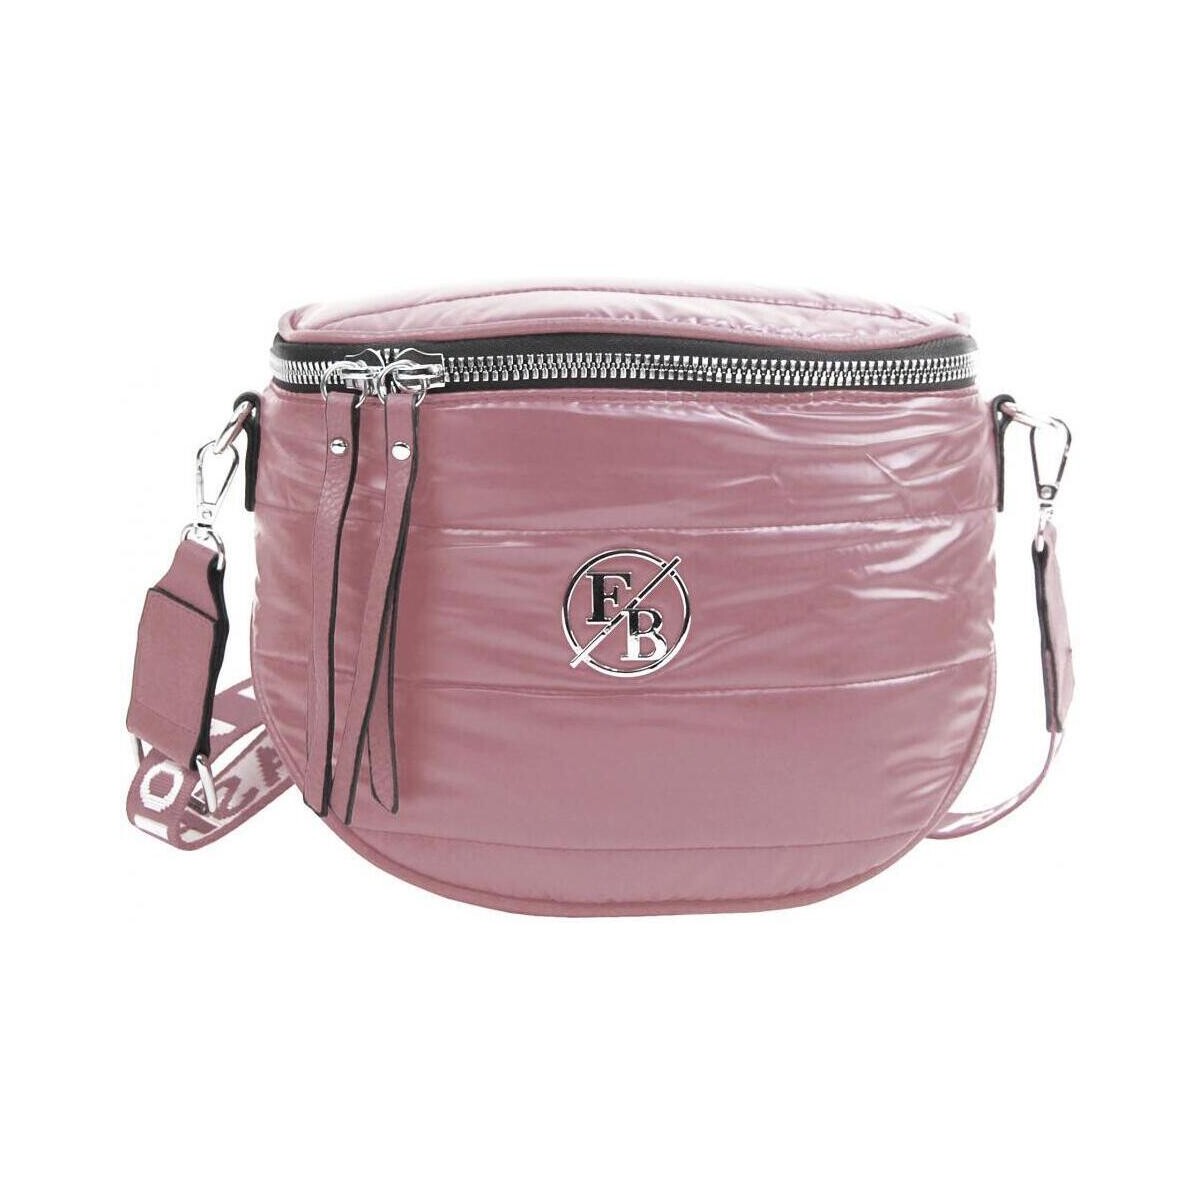 Taška Ženy Kabelky  Fashion Bag Moderní dámská crossbody kabelka / ledvinka metalická růžová Růžová